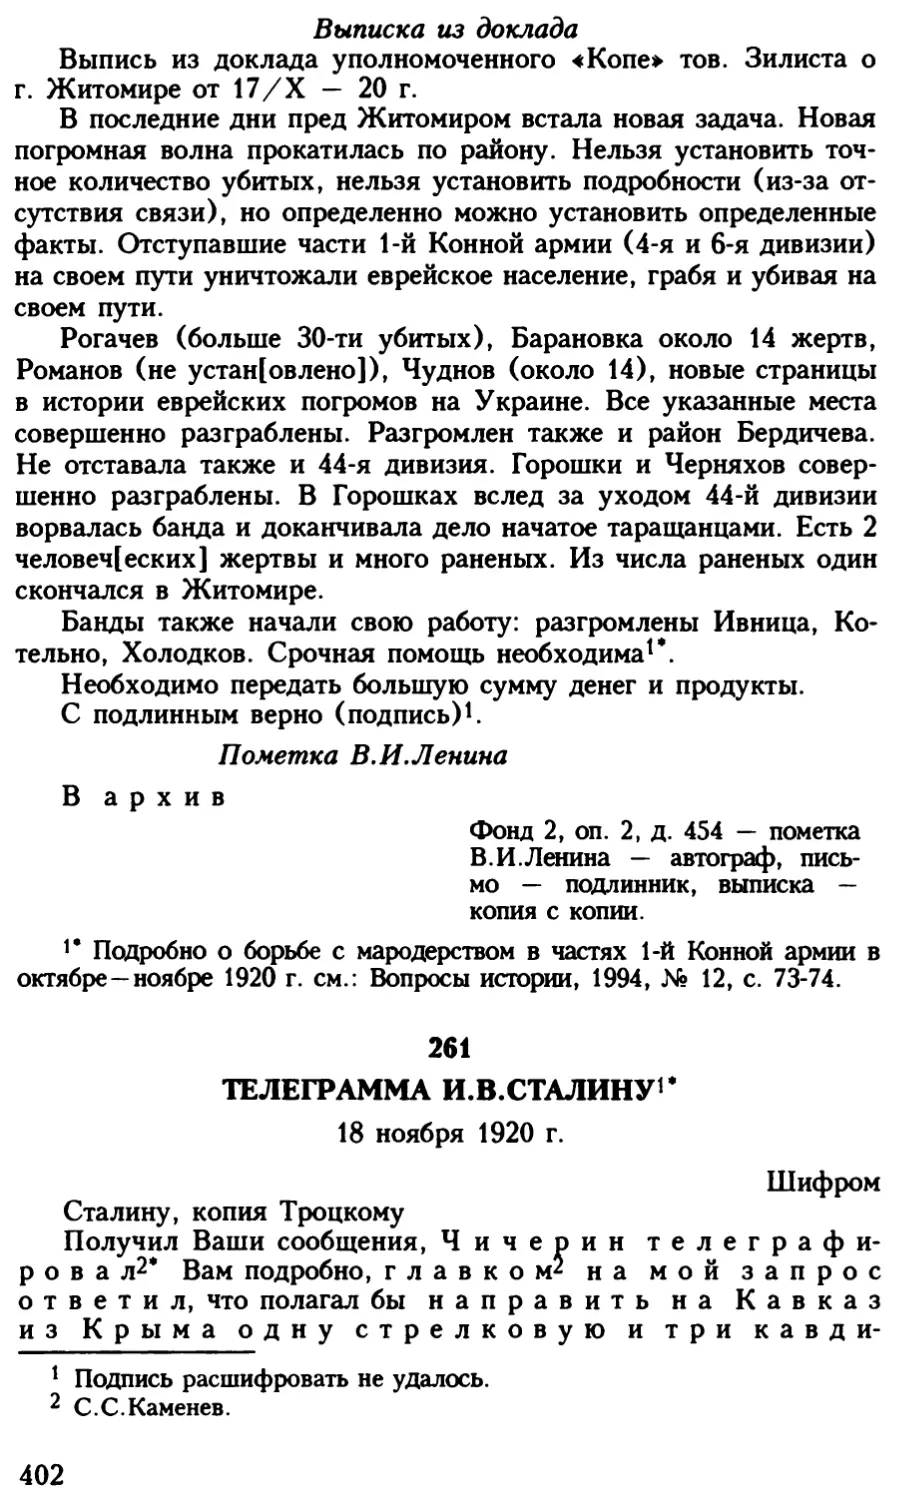 261. Телеграмма И.В.Сталину. 18 ноября 1920 г